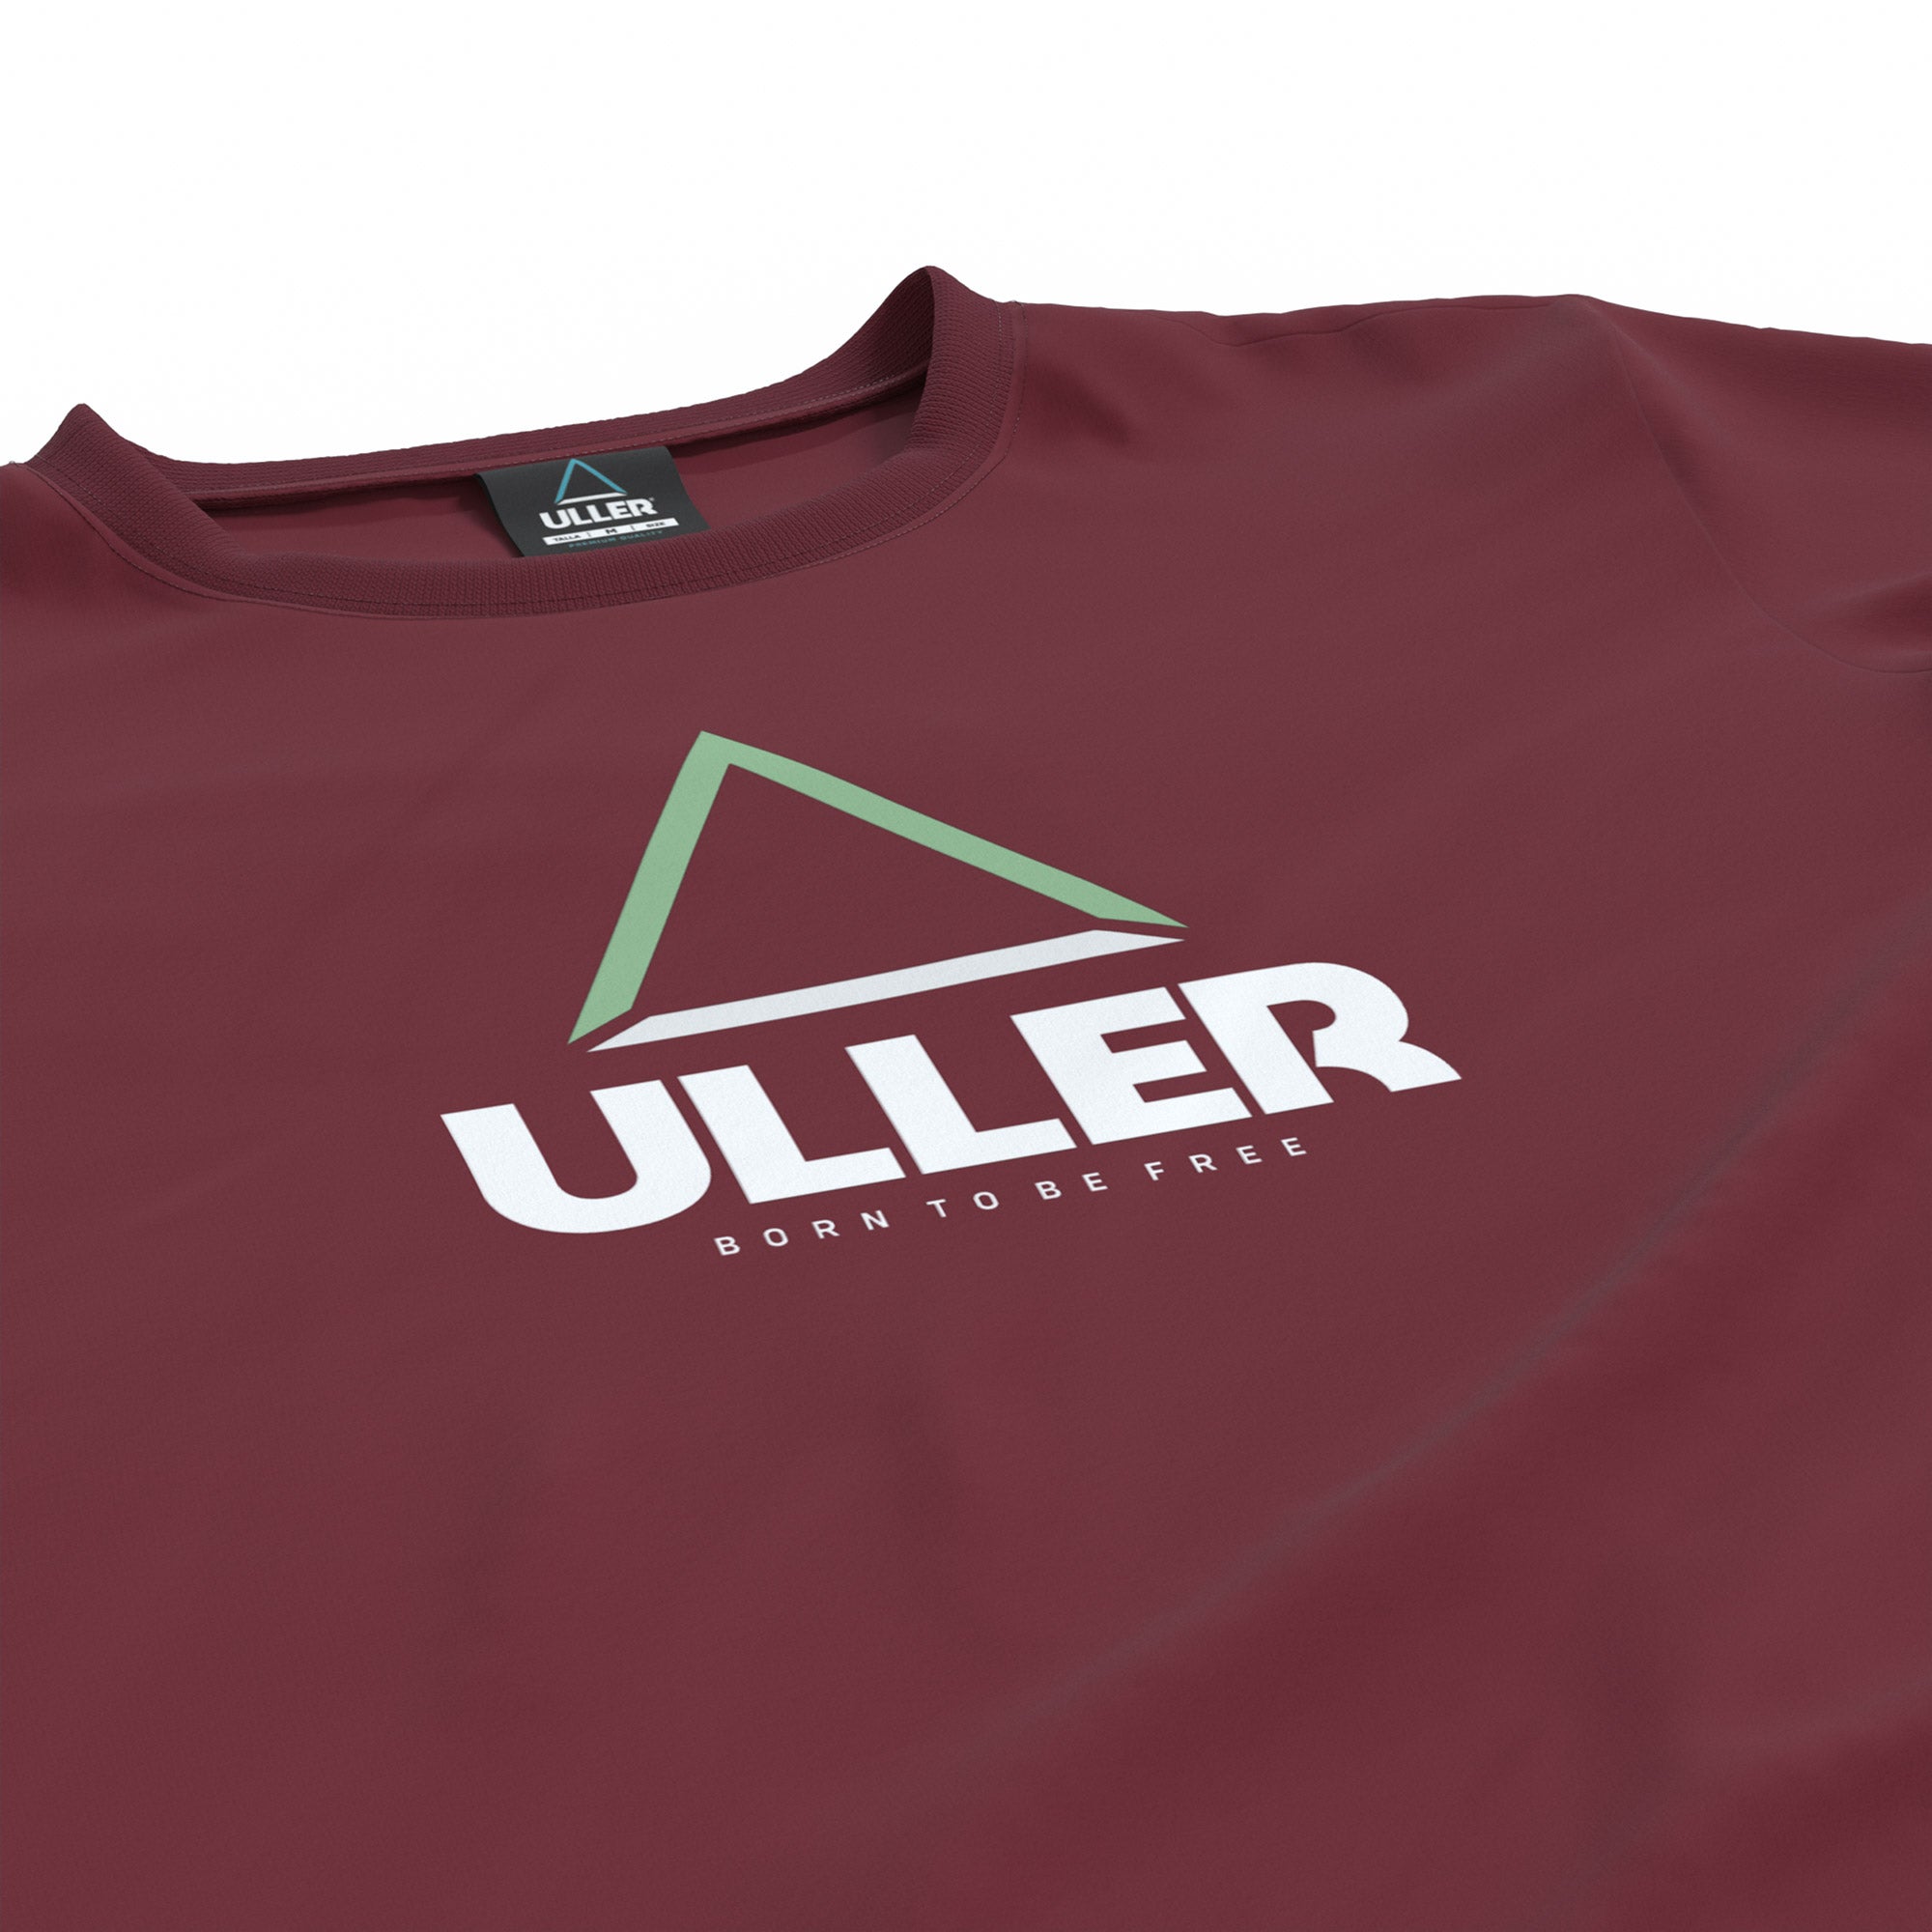 Camiseta Uller Classic - Granate  MKP